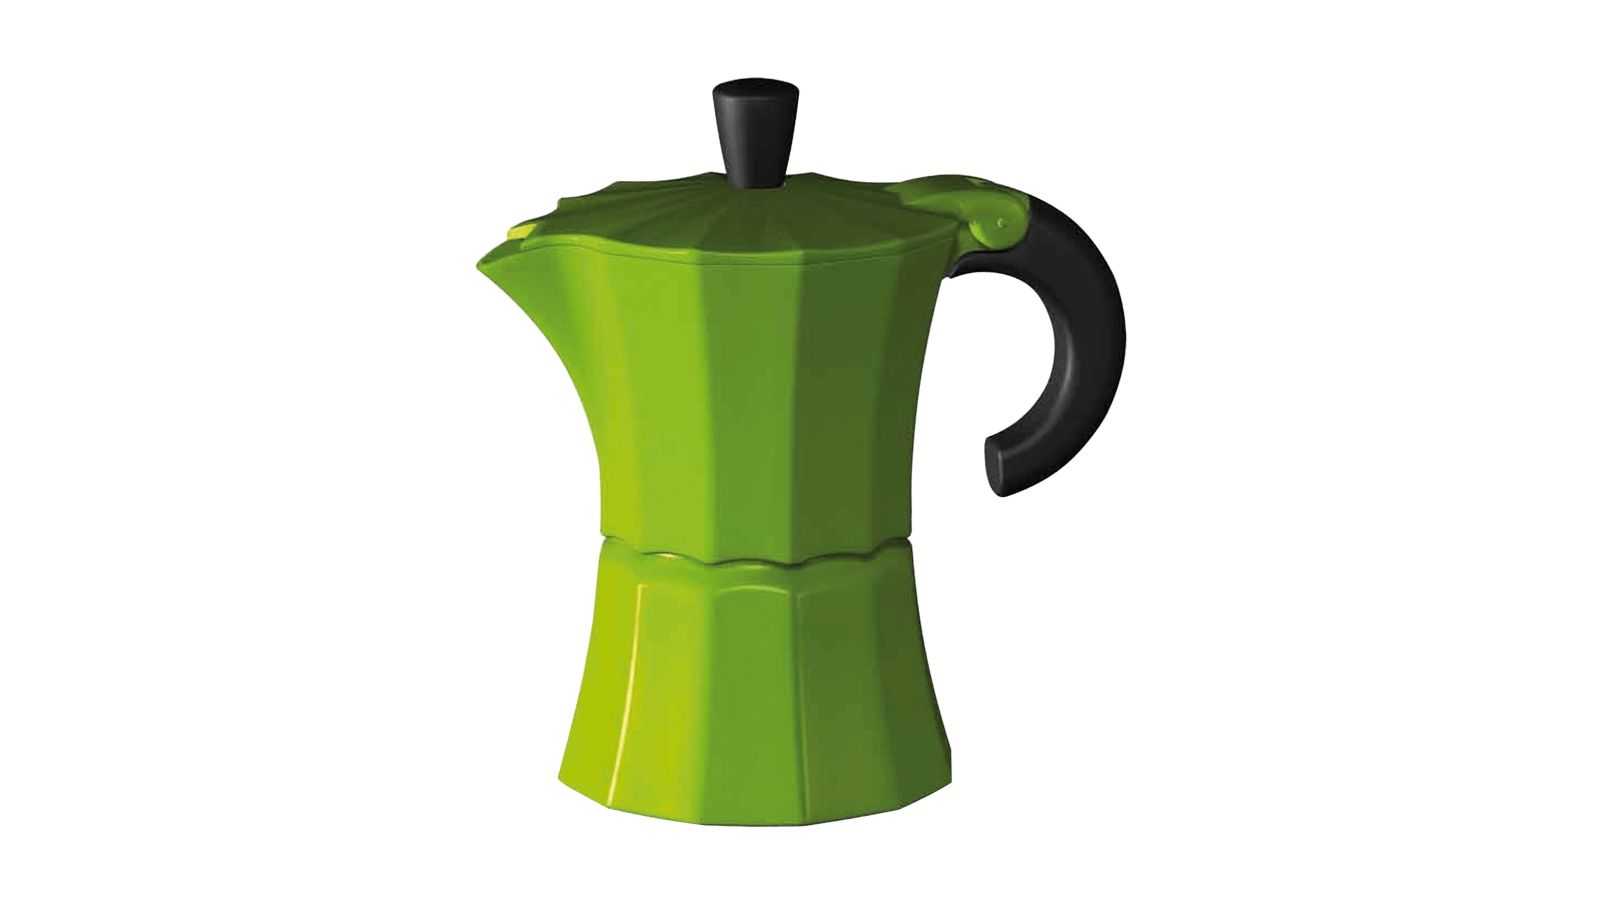 Příslušenství ke kávovaru - konvice, zelená, pro 6 šálků pro kávovary Bosch Siemens - 00572034 BSH - Bosch / Siemens náhradní díly